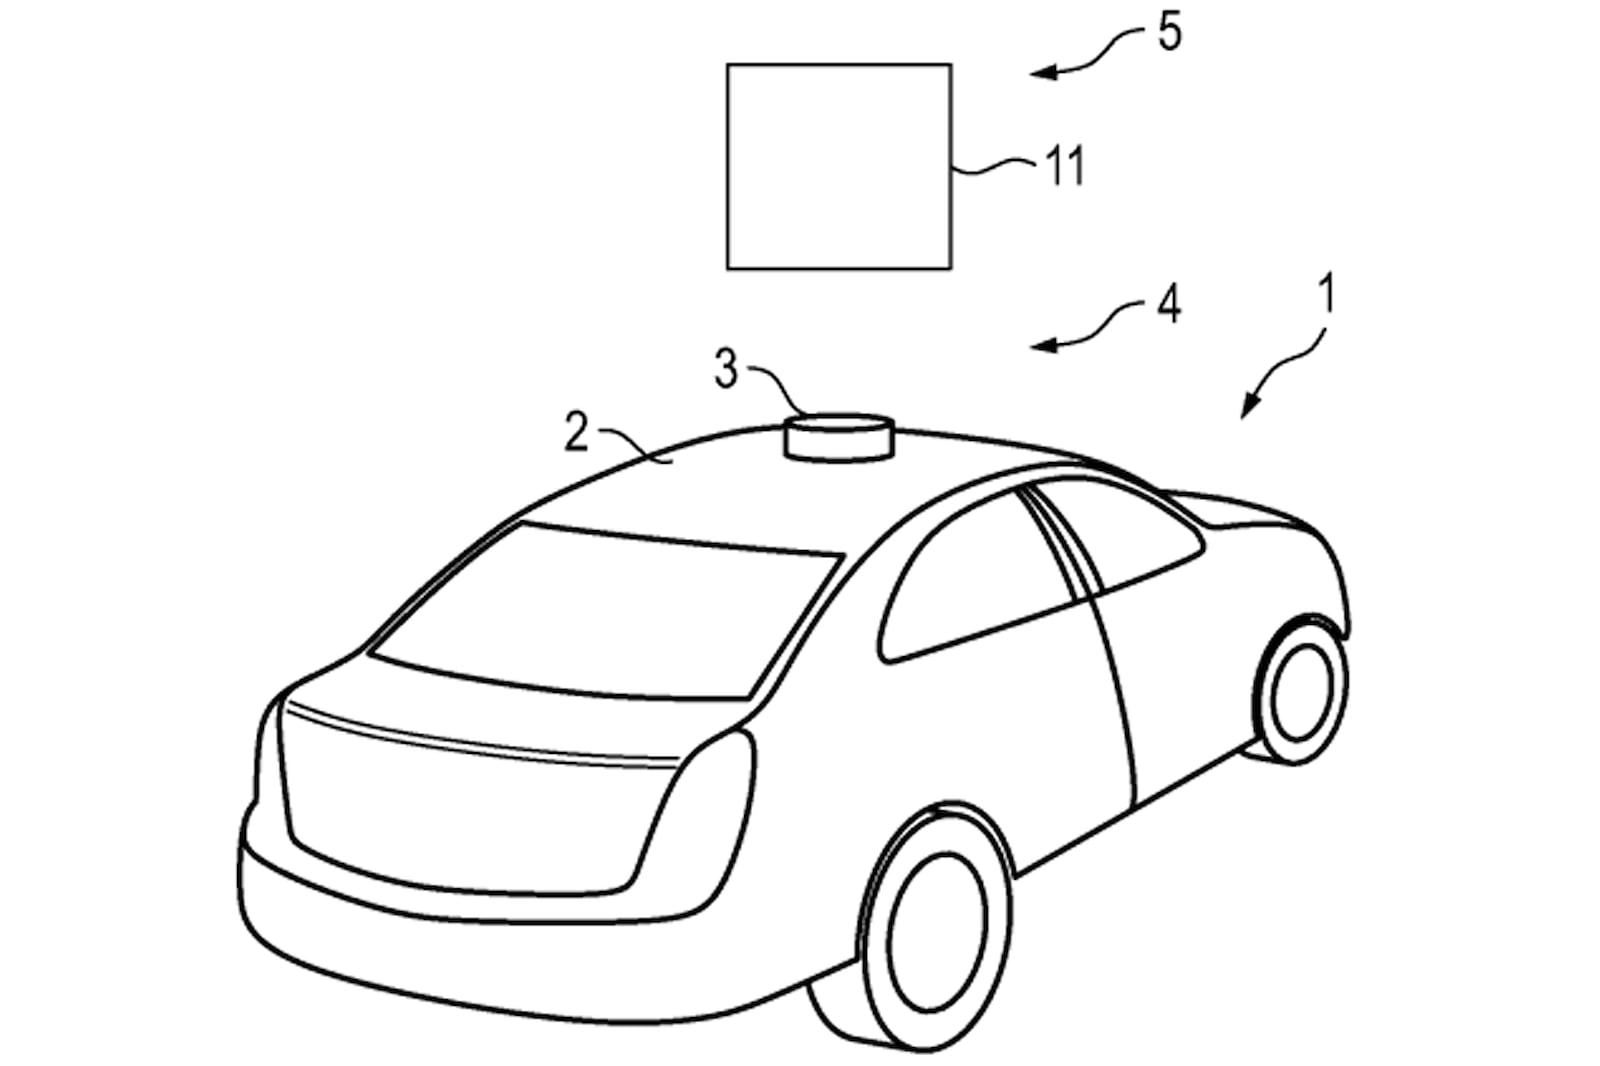 Hệ thống Hologram này sẽ được dùng để tạo nên những hình ảnh mô tả về tình trạng của chính chiếc xe